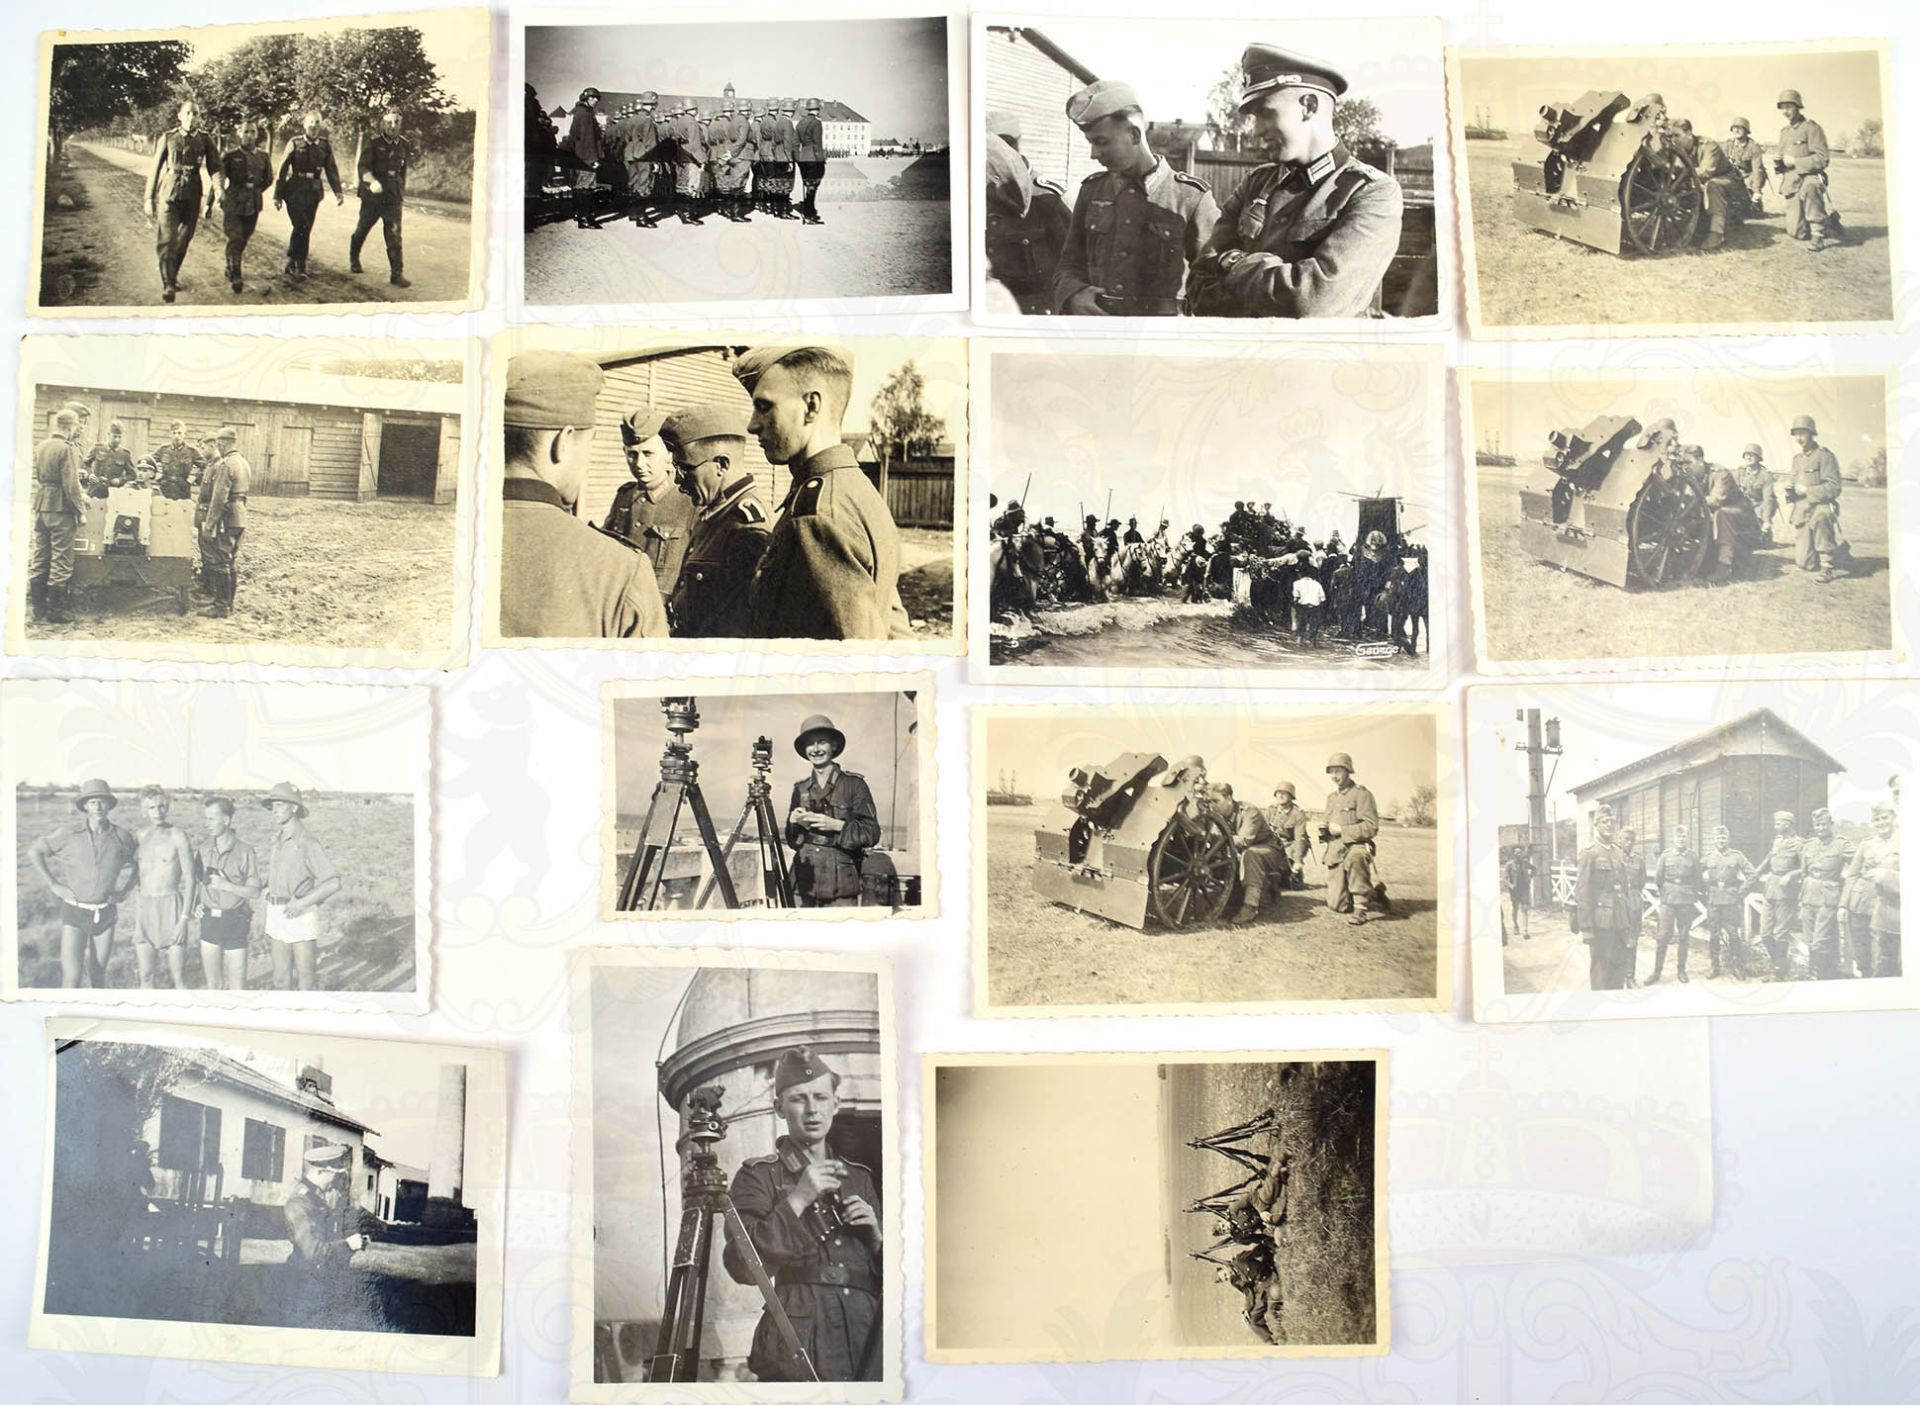 41 FOTOS, zahlr. 7,5cm leichte Infanterie-Geschütze 18, Ausbildung, Scharfschießen, Offiziere, - Bild 3 aus 3